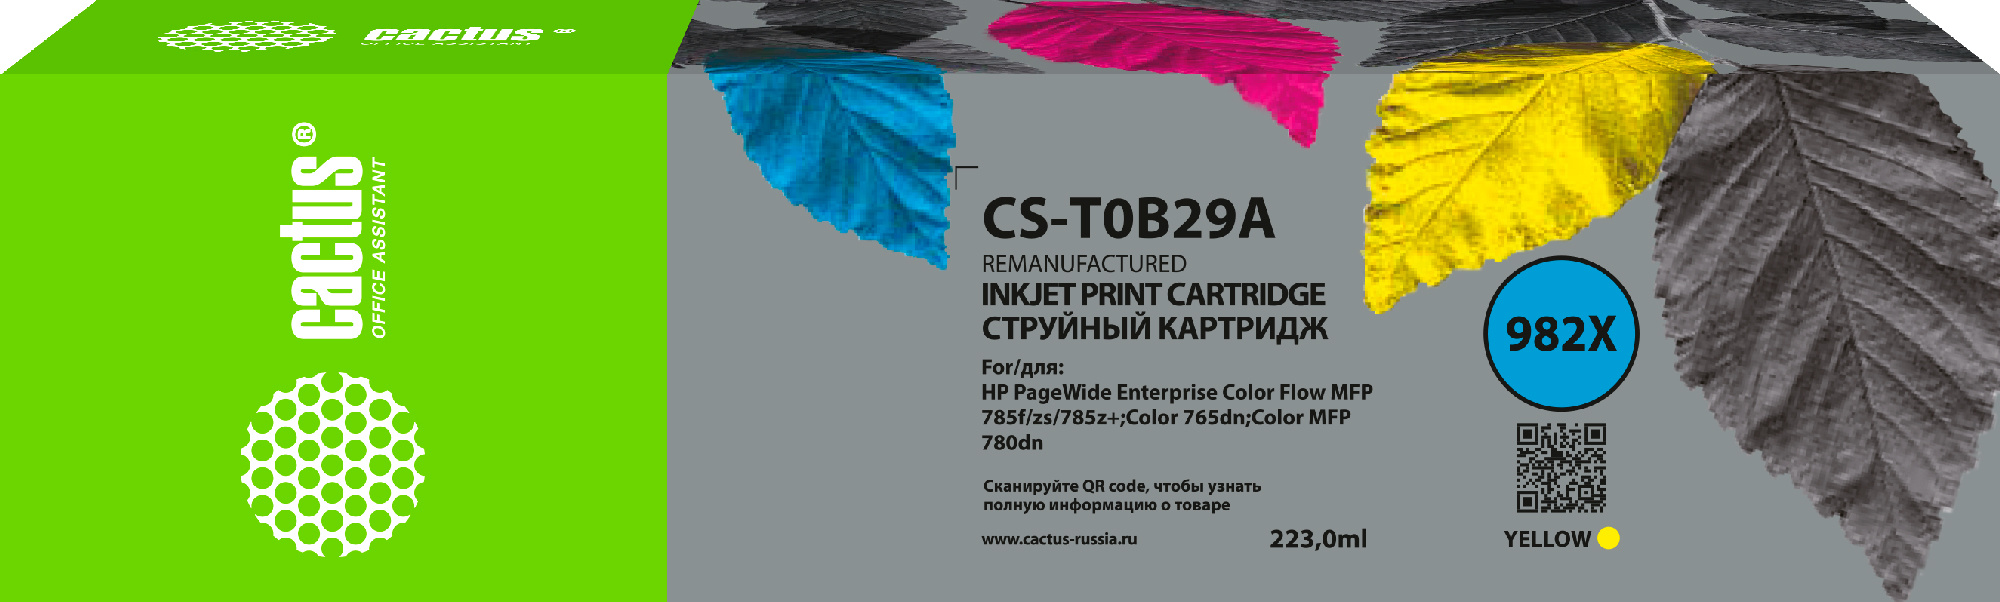 Картридж струйный Cactus CS-T0B29A 982X желтый (223мл) для HP PageWide 765dn/780 Enterprise Color